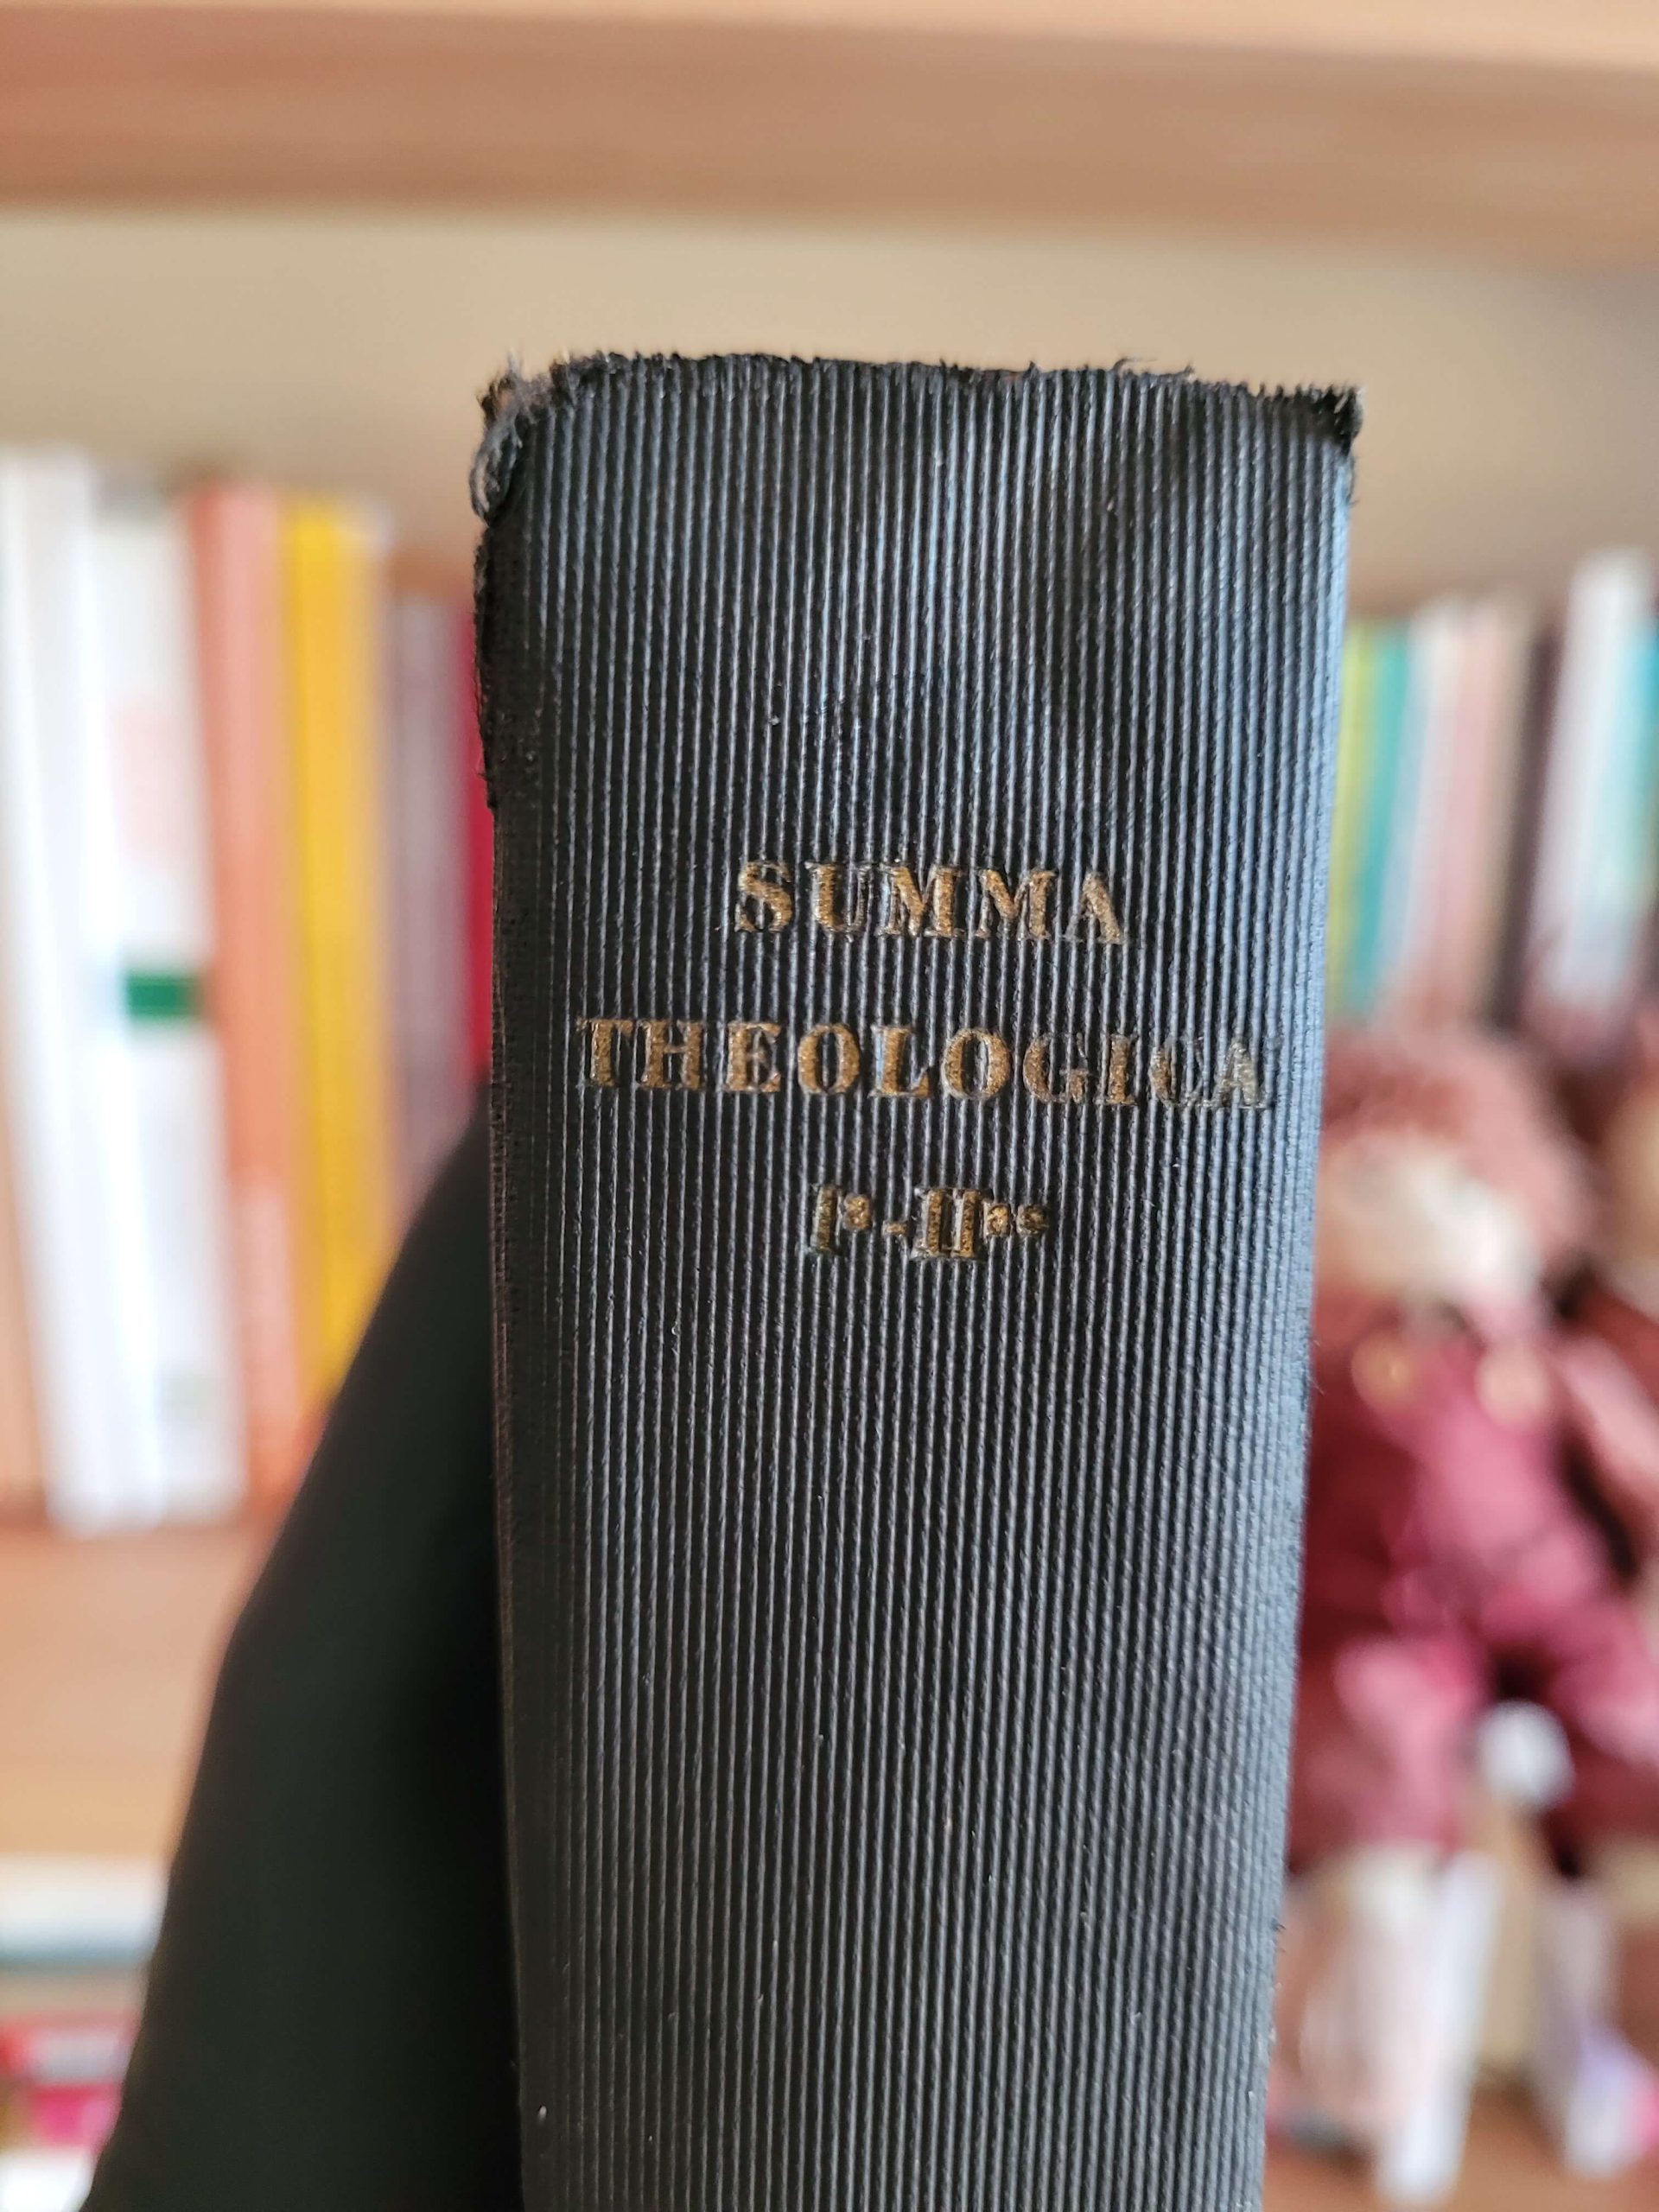 Summa theologica (1926)